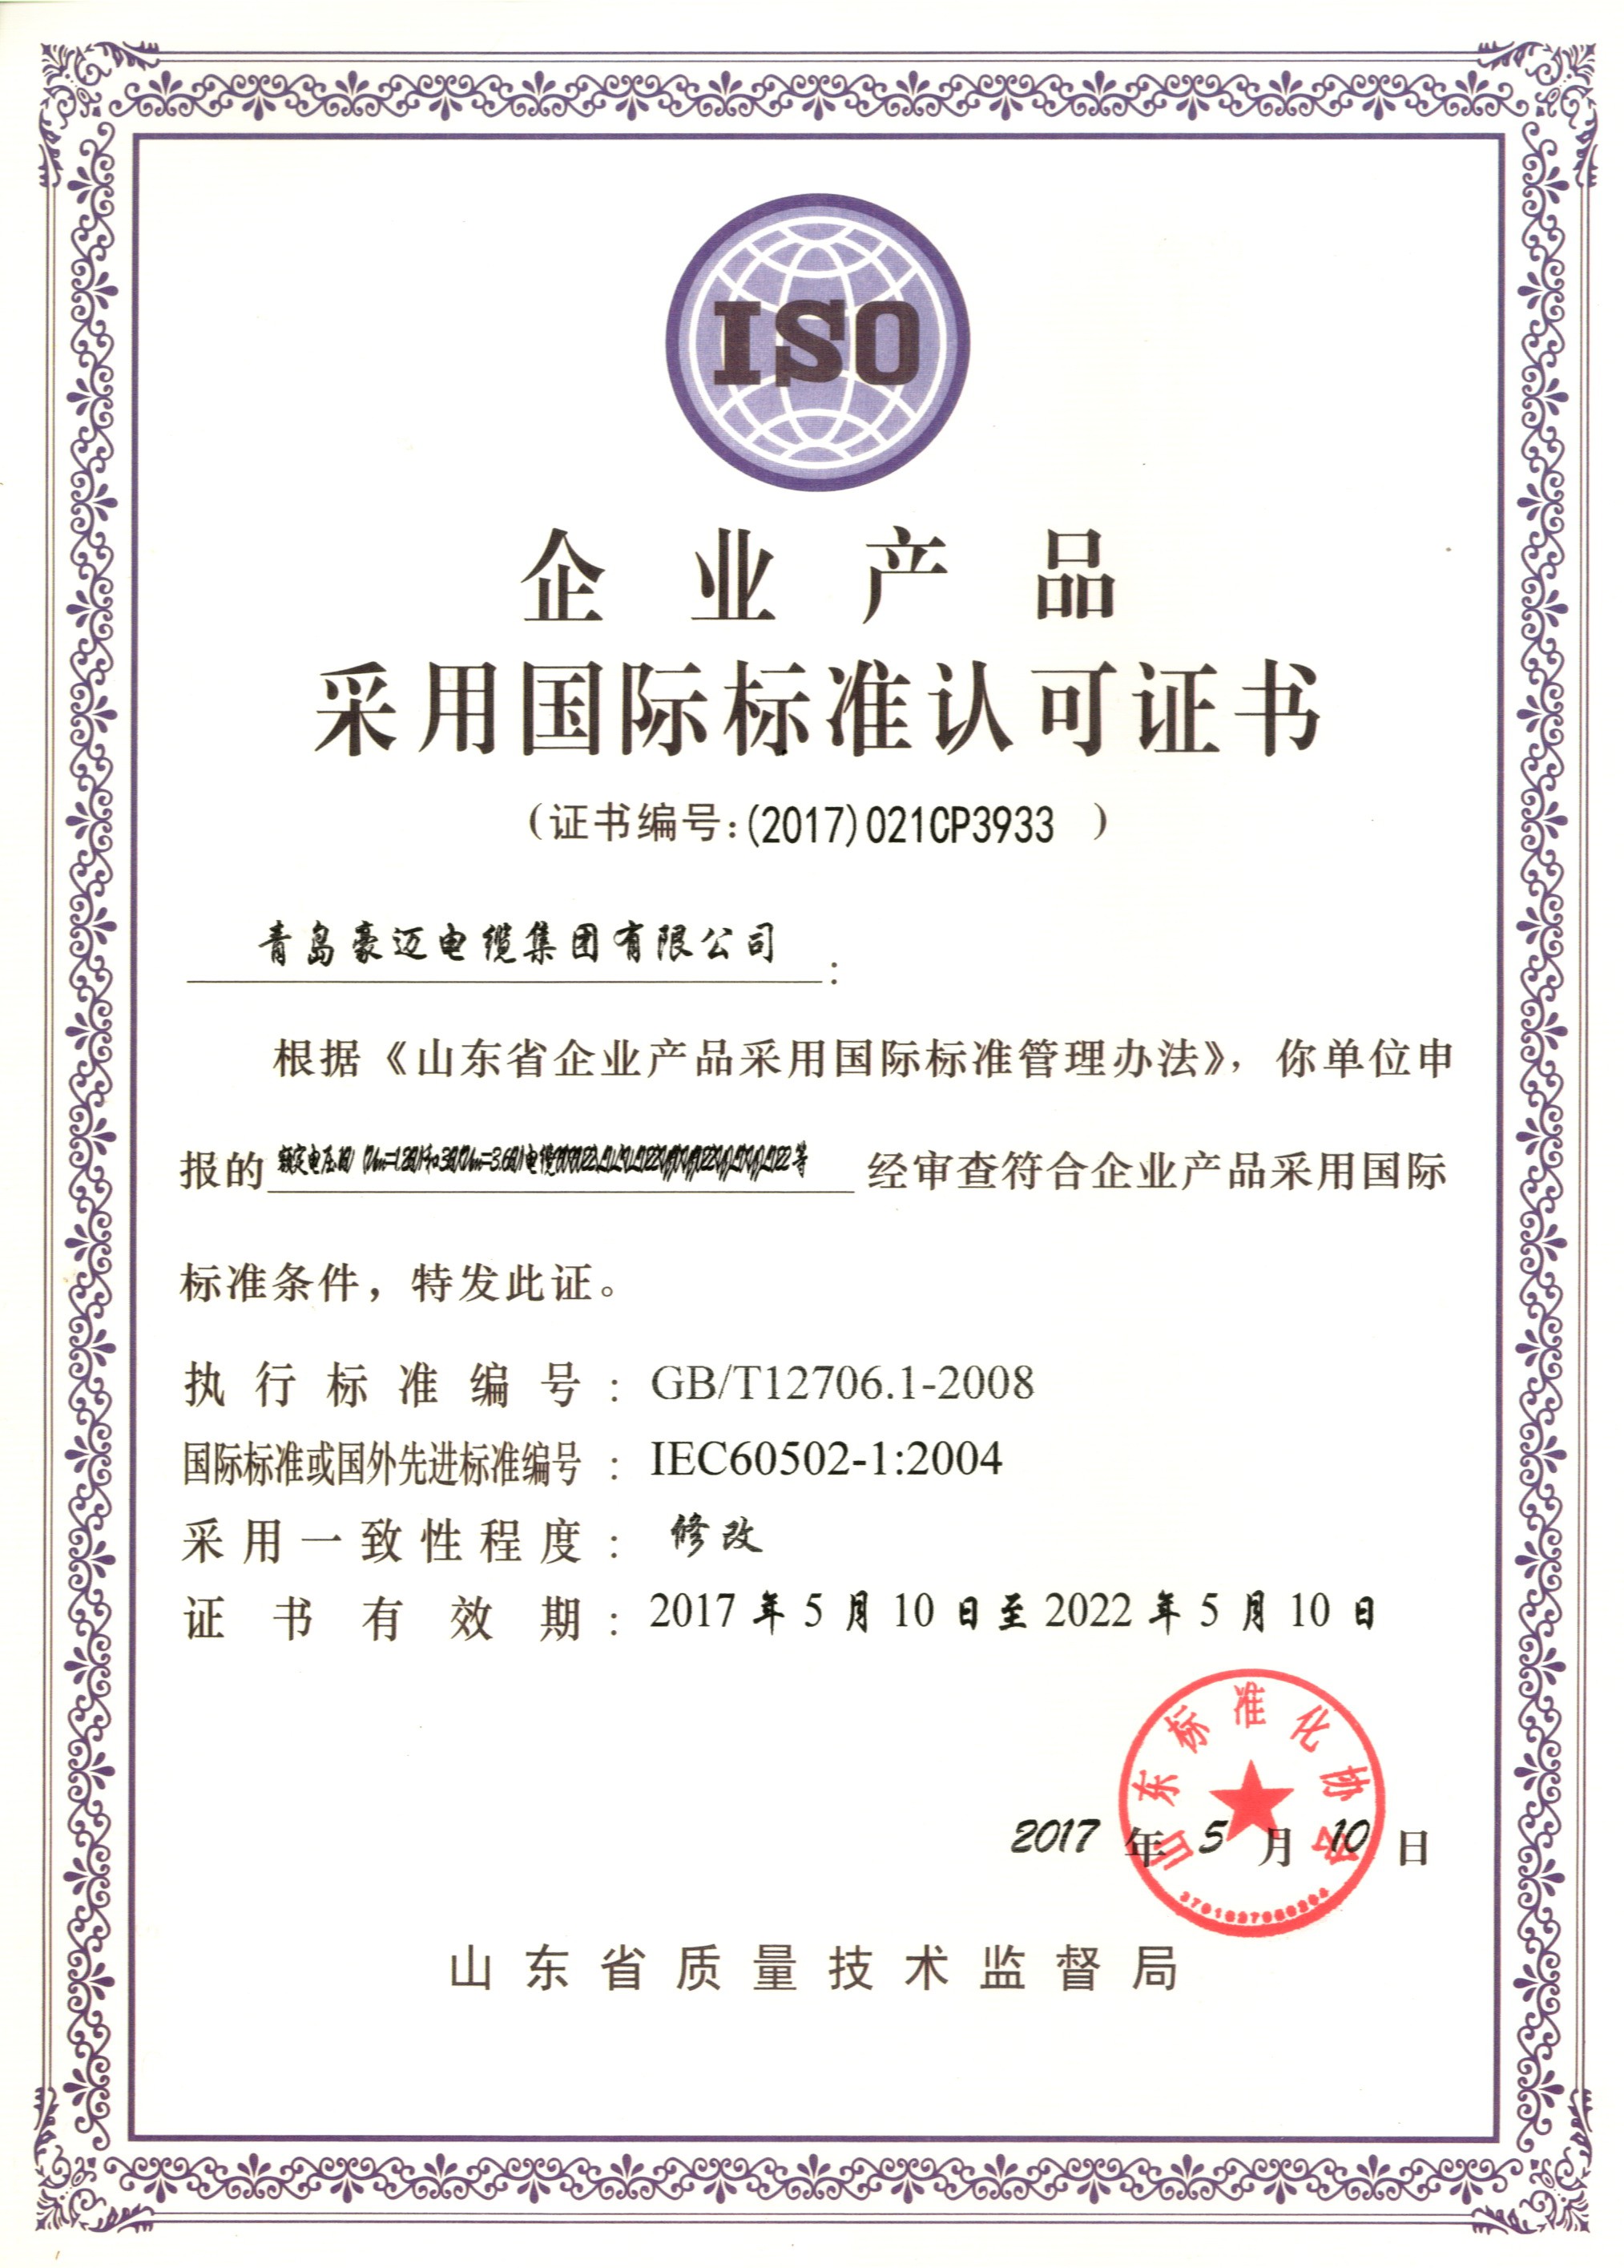 企业产品采用国际标准认可证书5